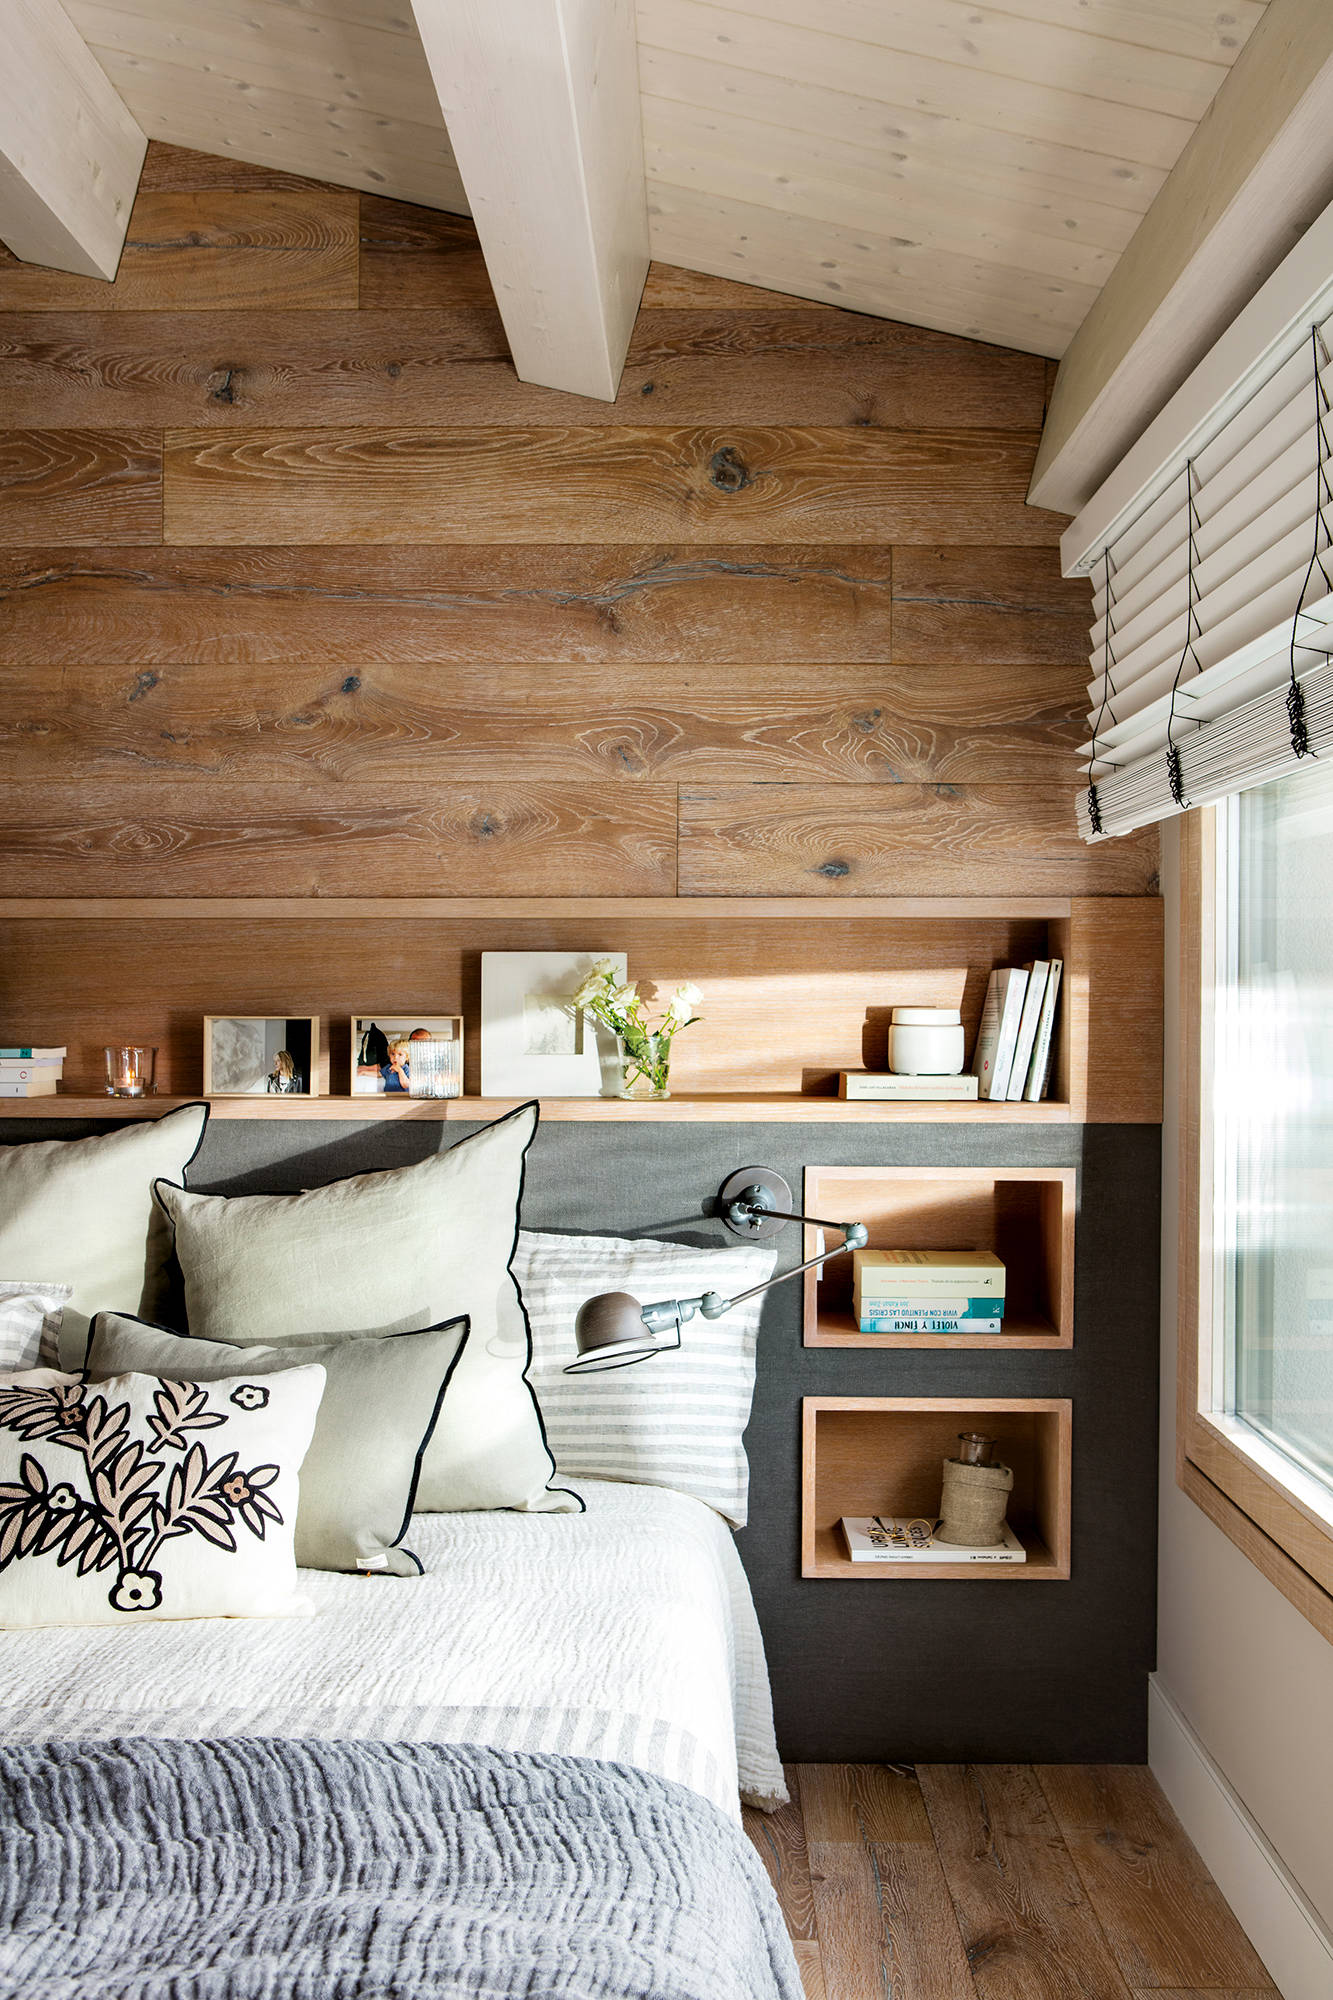 Dormitorio con pared revestida de madera y cabecero tipo hornacina y mesillas incorporadas